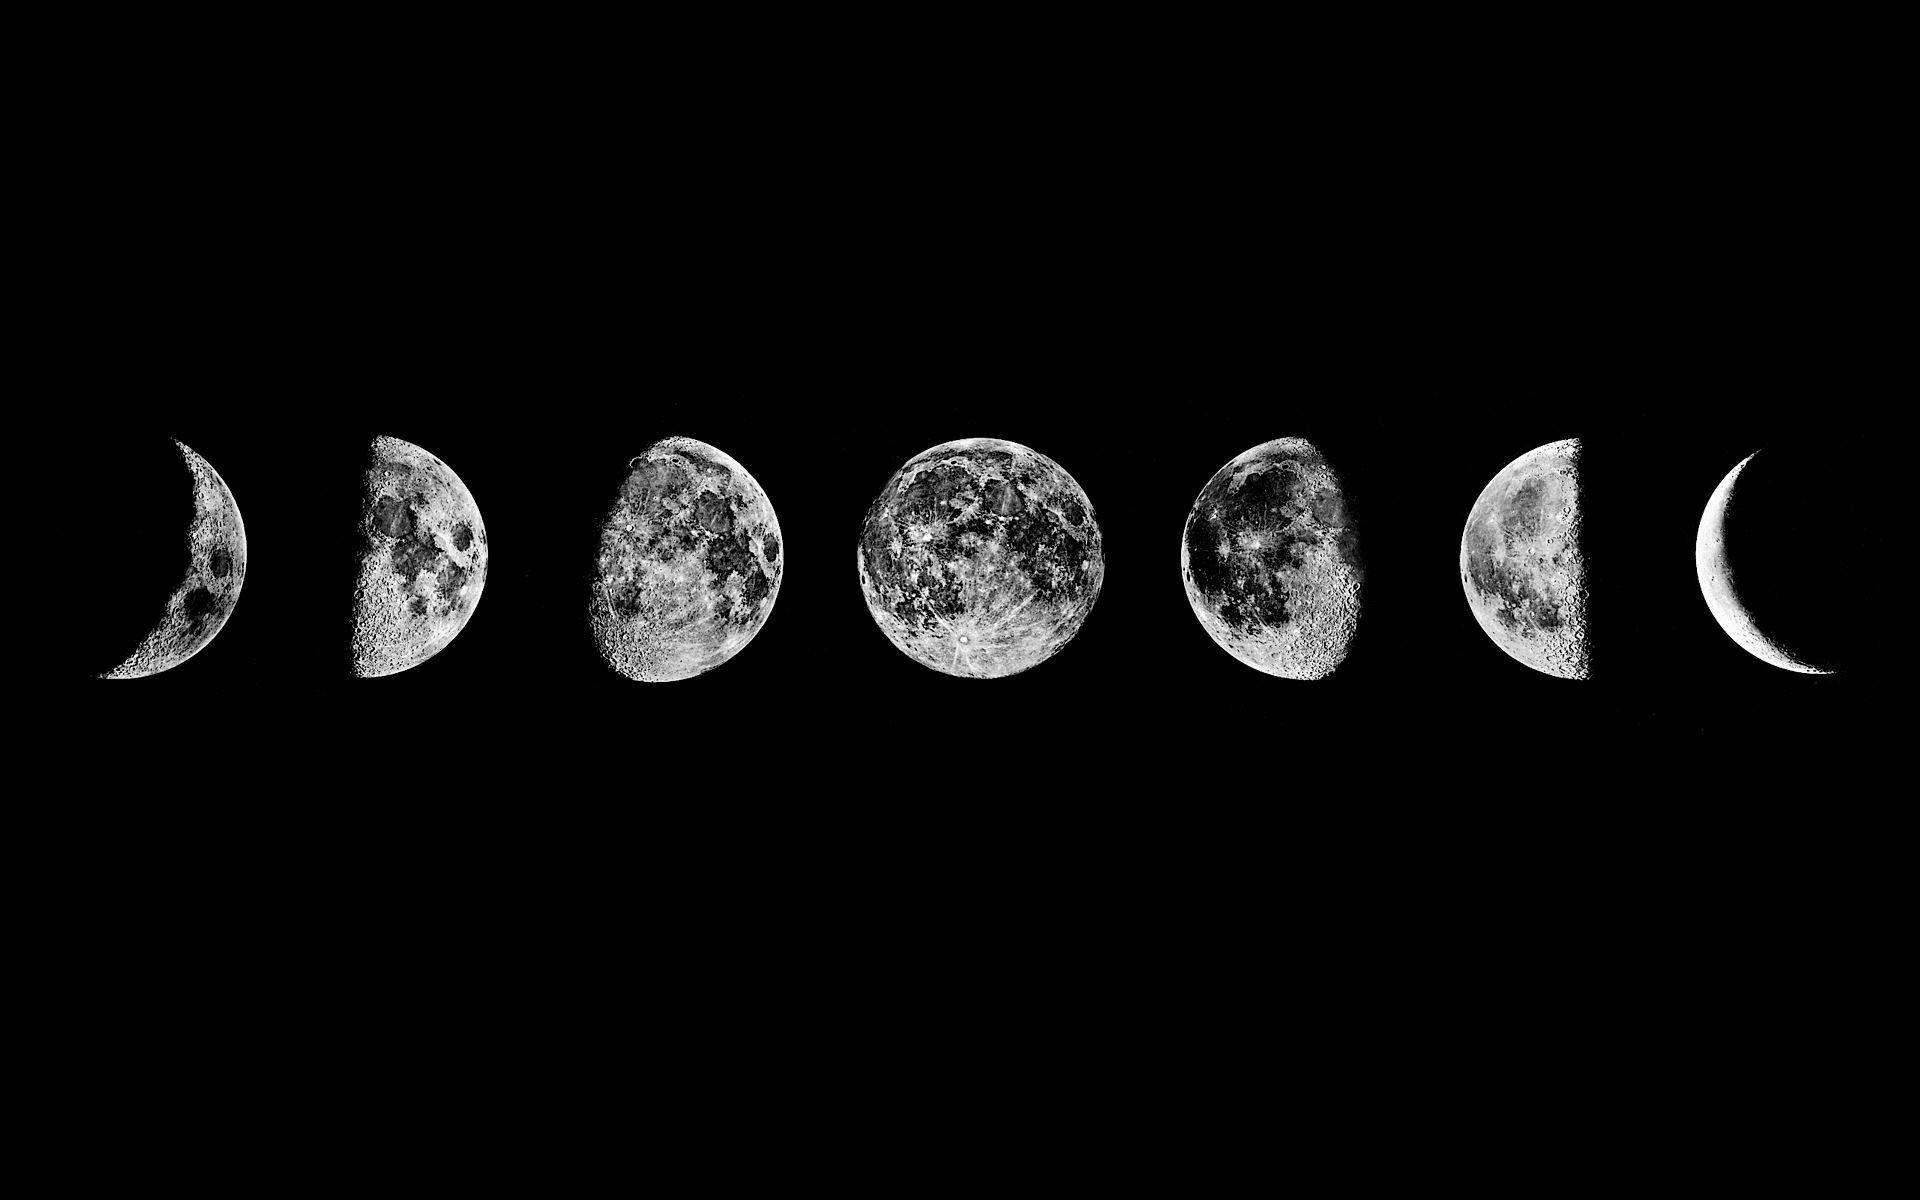 Realistiskgrafik Av Månens Faser. Wallpaper